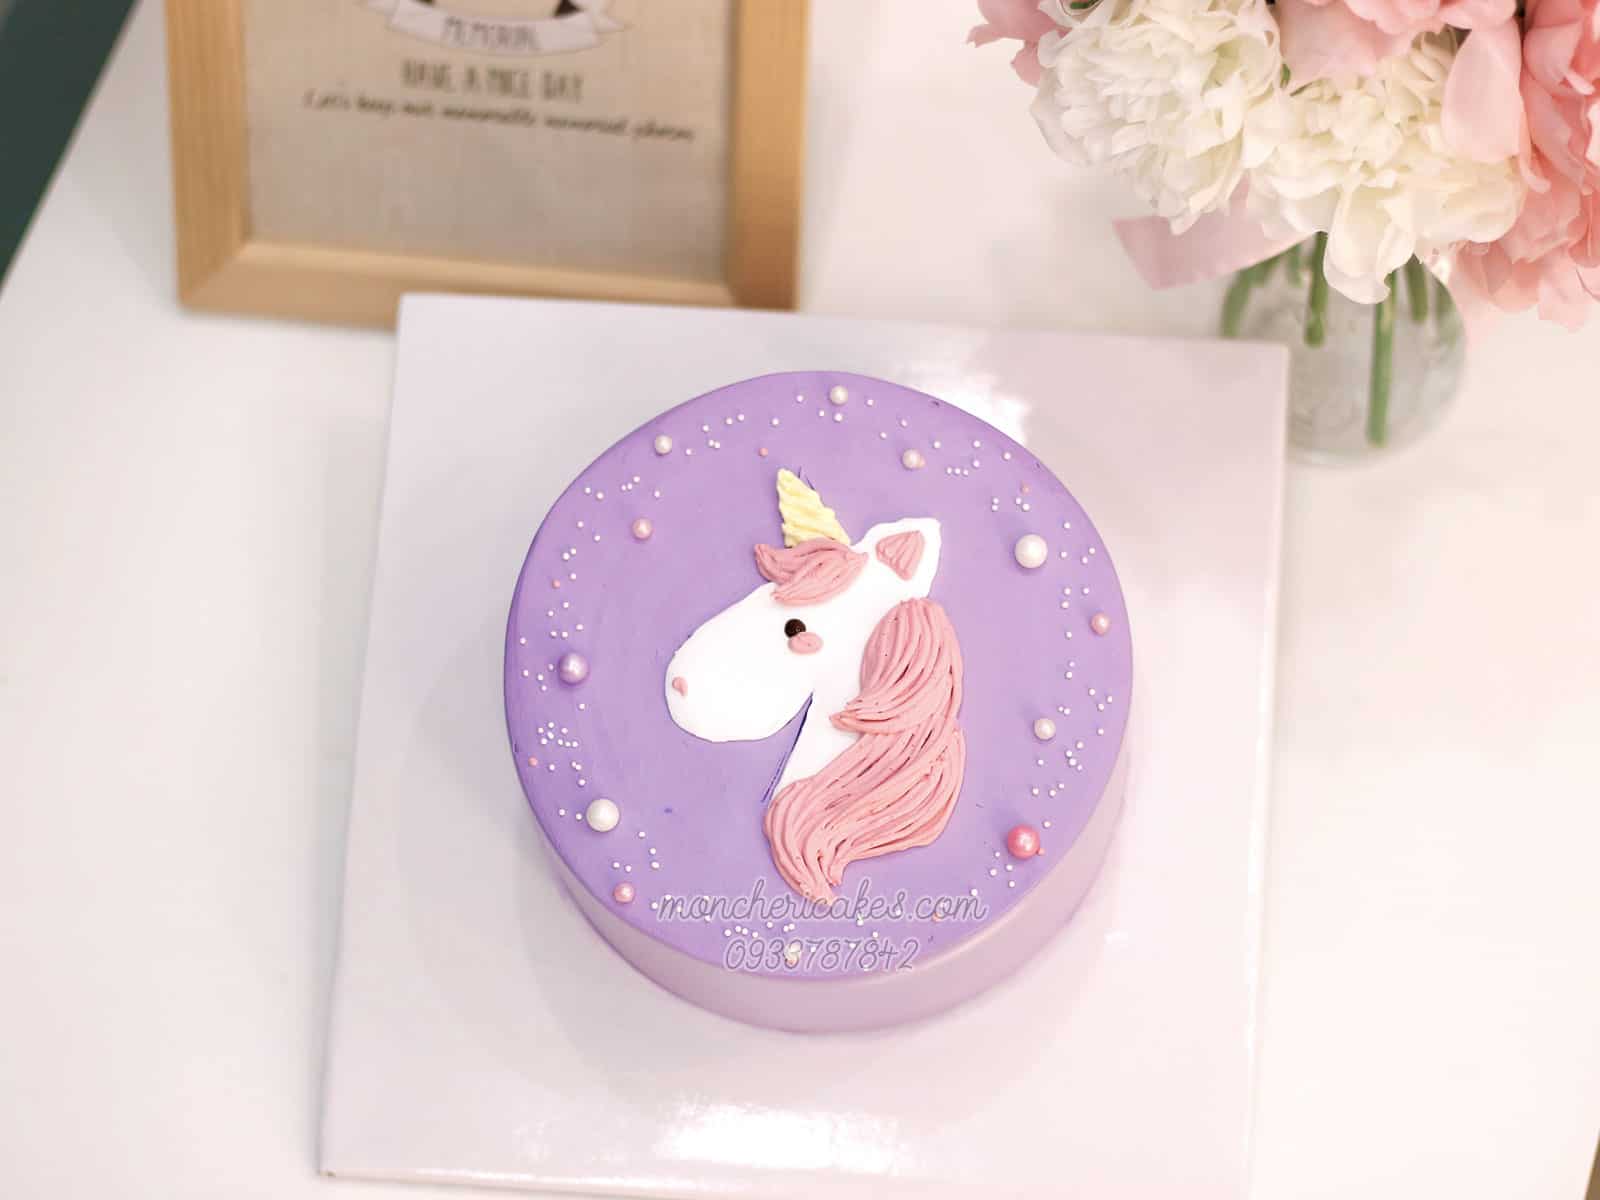 Bánh kem Unicorn là một siêu phẩm đáng yêu và hấp dẫn. Hãy xem hình ảnh để chiêm ngưỡng những chiếc bánh kem màu sắc tuyệt đẹp với những họa tiết cầu vồng và chi tiết đáng yêu của chú lạc đà nhỏ.